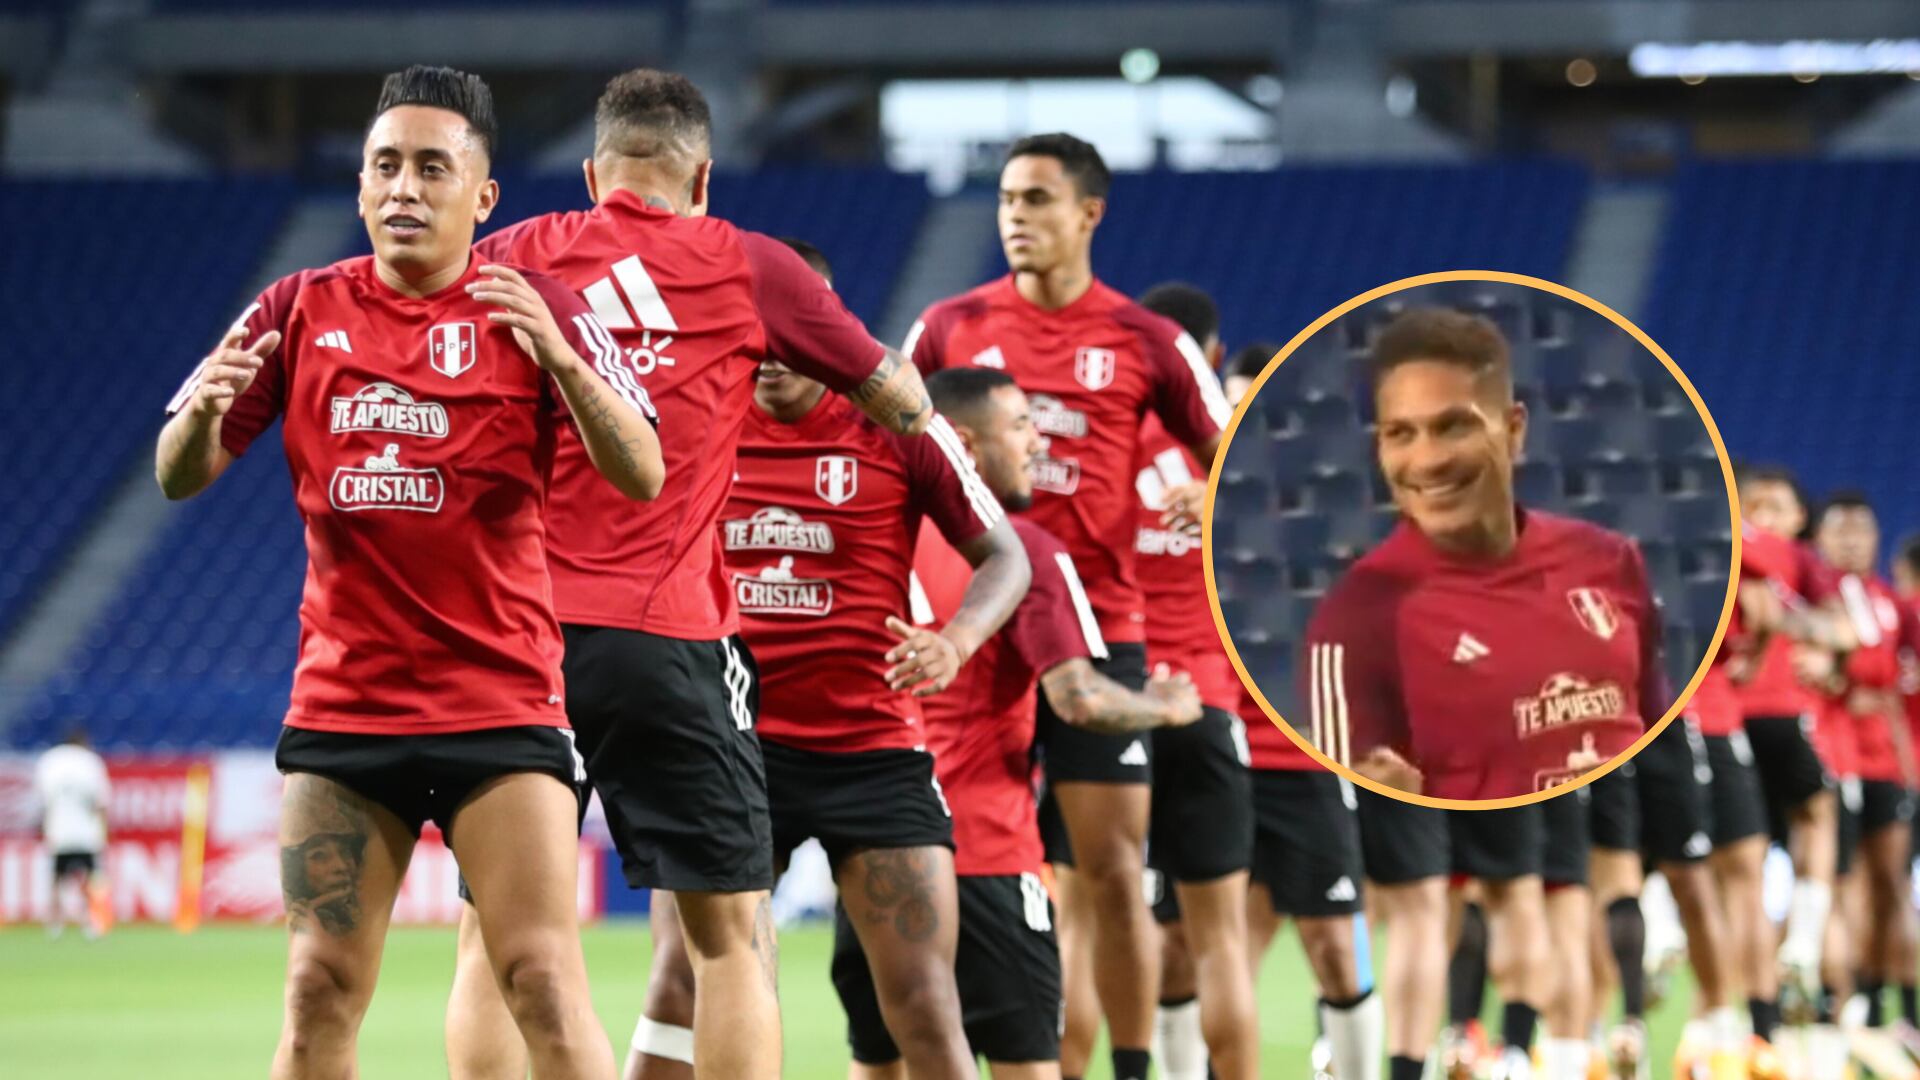 Paolo Guerrero cometió error de coordinación y desató las risas de sus compañeros de la selección peruana.